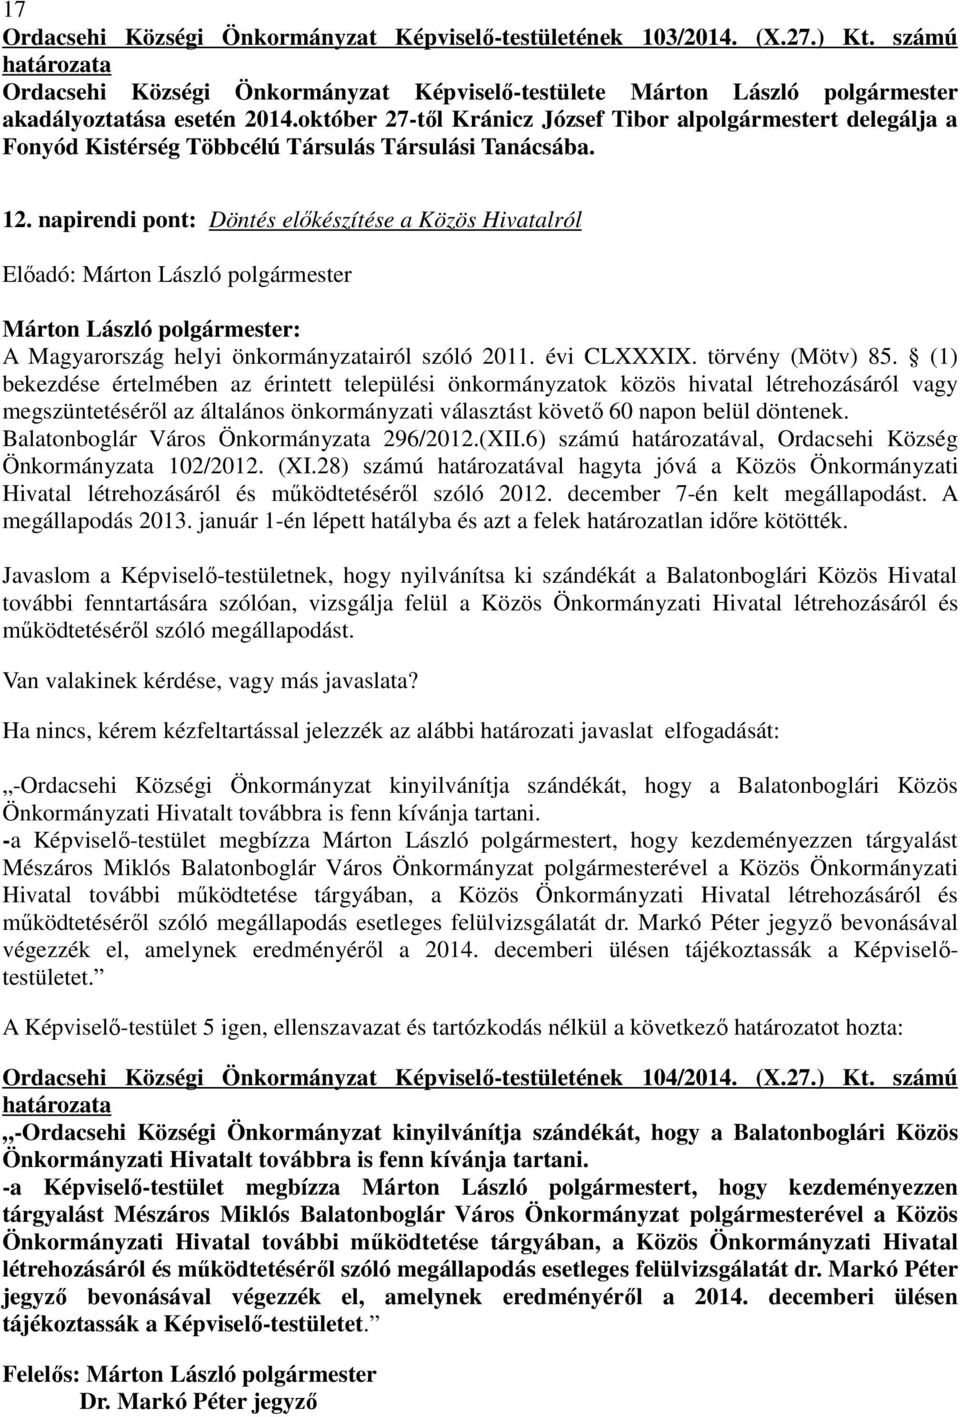 napirendi pont: Döntés elıkészítése a Közös Hivatalról A Magyarország helyi önkormányzatairól szóló 2011. évi CLXXXIX. törvény (Mötv) 85.